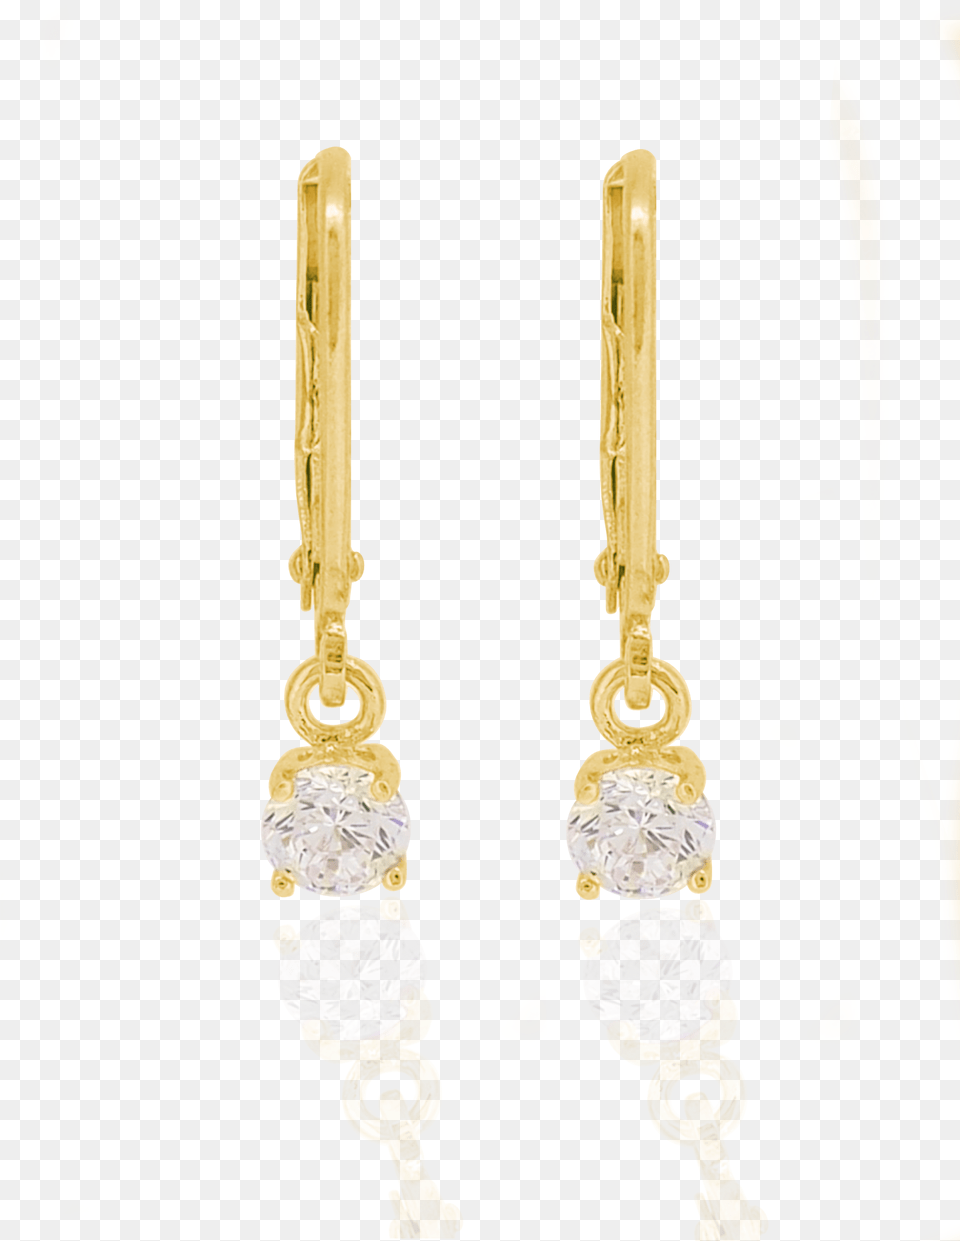 Brienne Simple Drop Hook Earrings In Gold Earrings, Accessories, Earring, Jewelry, Diamond Free Png